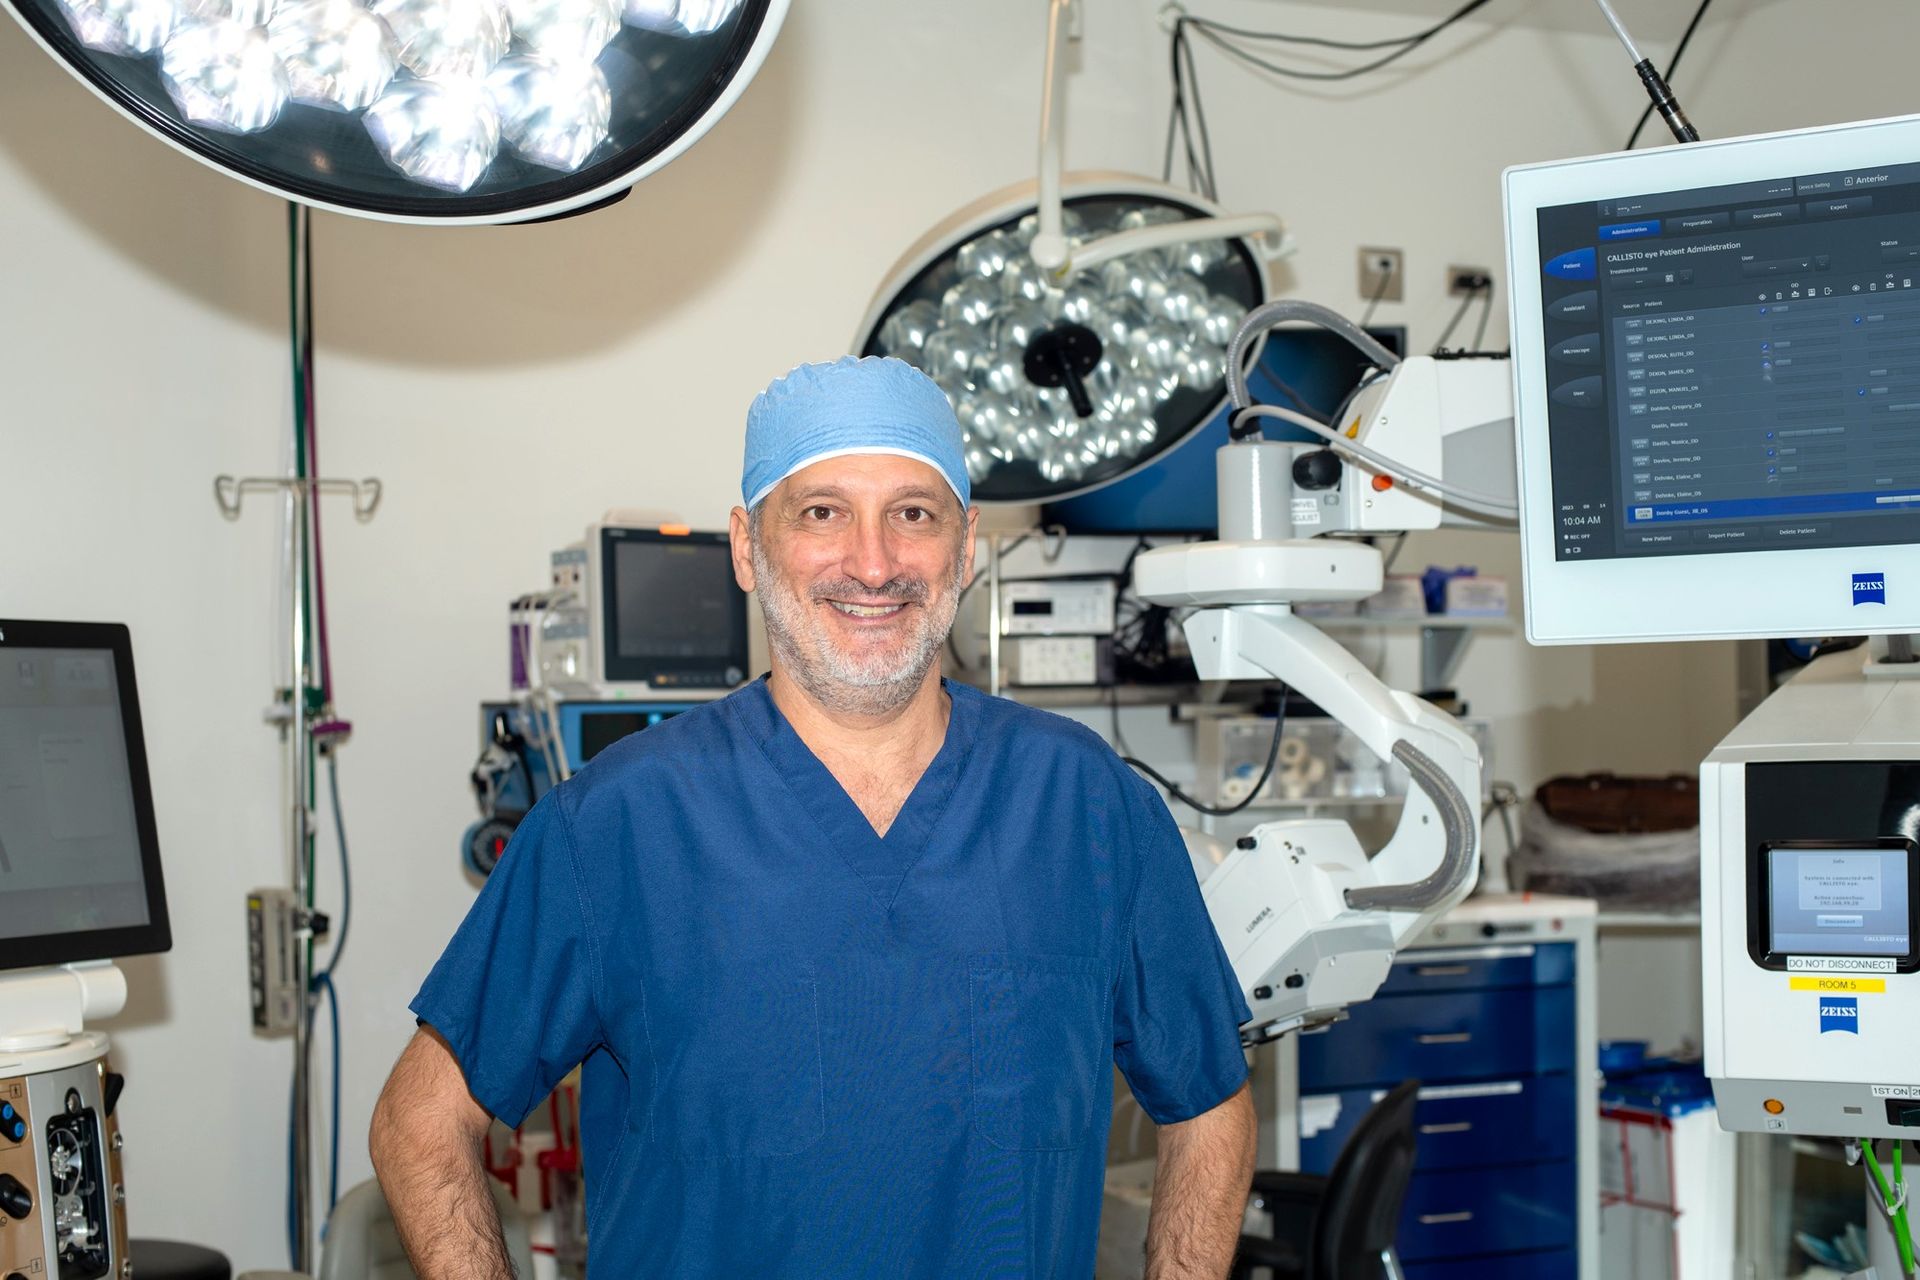 Навигация в хирургии катаракты после рефракционных процедур на роговице: Проблемы и решения